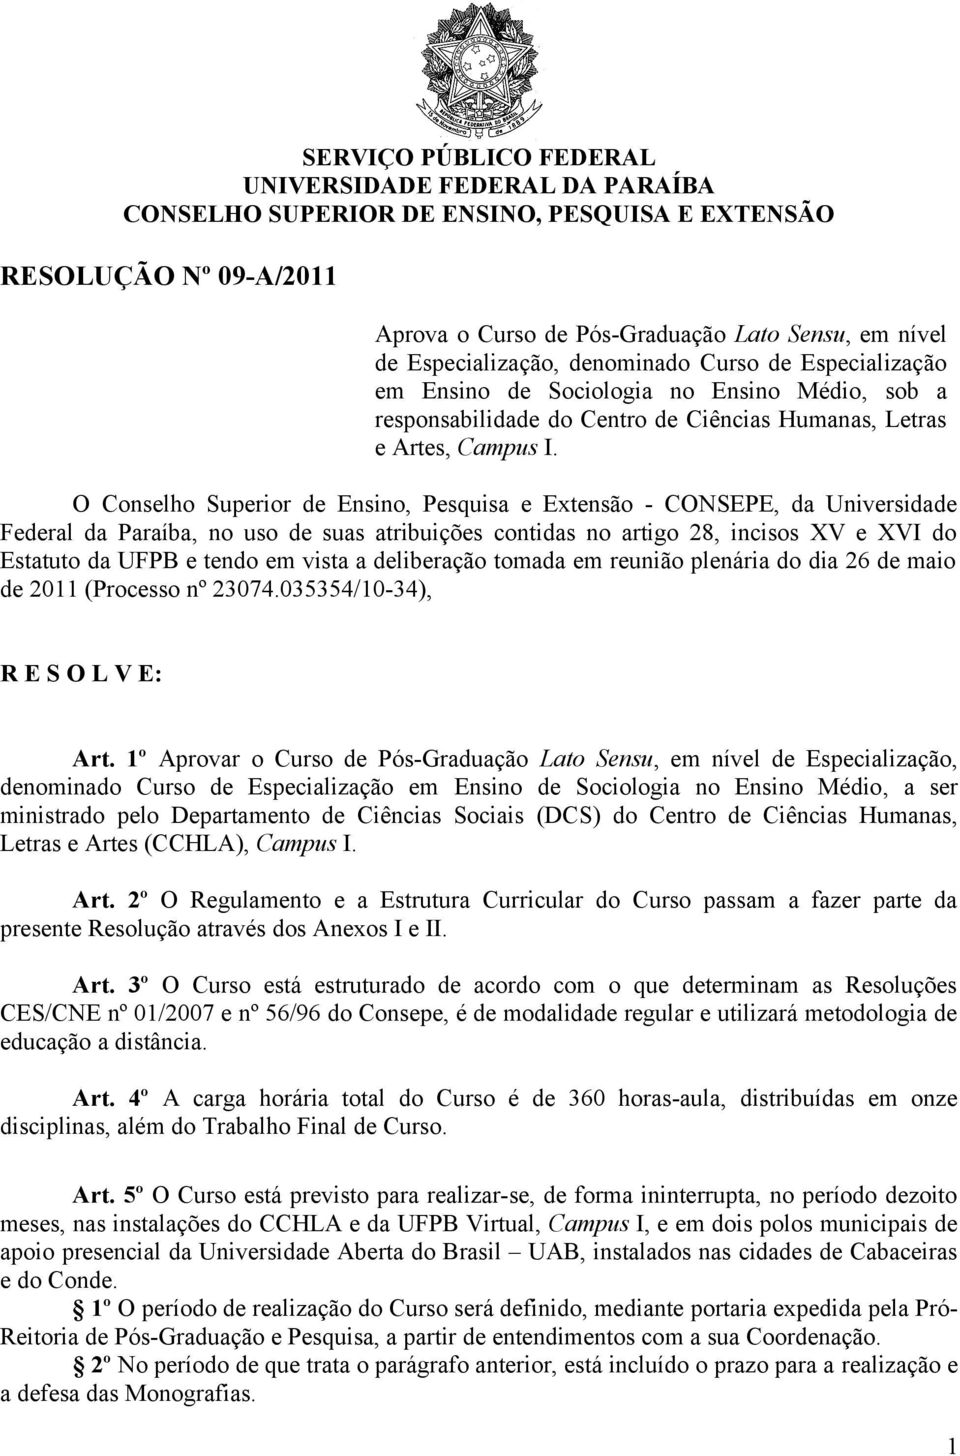 O Conselho Superior de Ensino, Pesquisa e Extensão - CONSEPE, da Universidade Federal da Paraíba, no uso de suas atribuições contidas no artigo 28, incisos XV e XVI do Estatuto da UFPB e tendo em